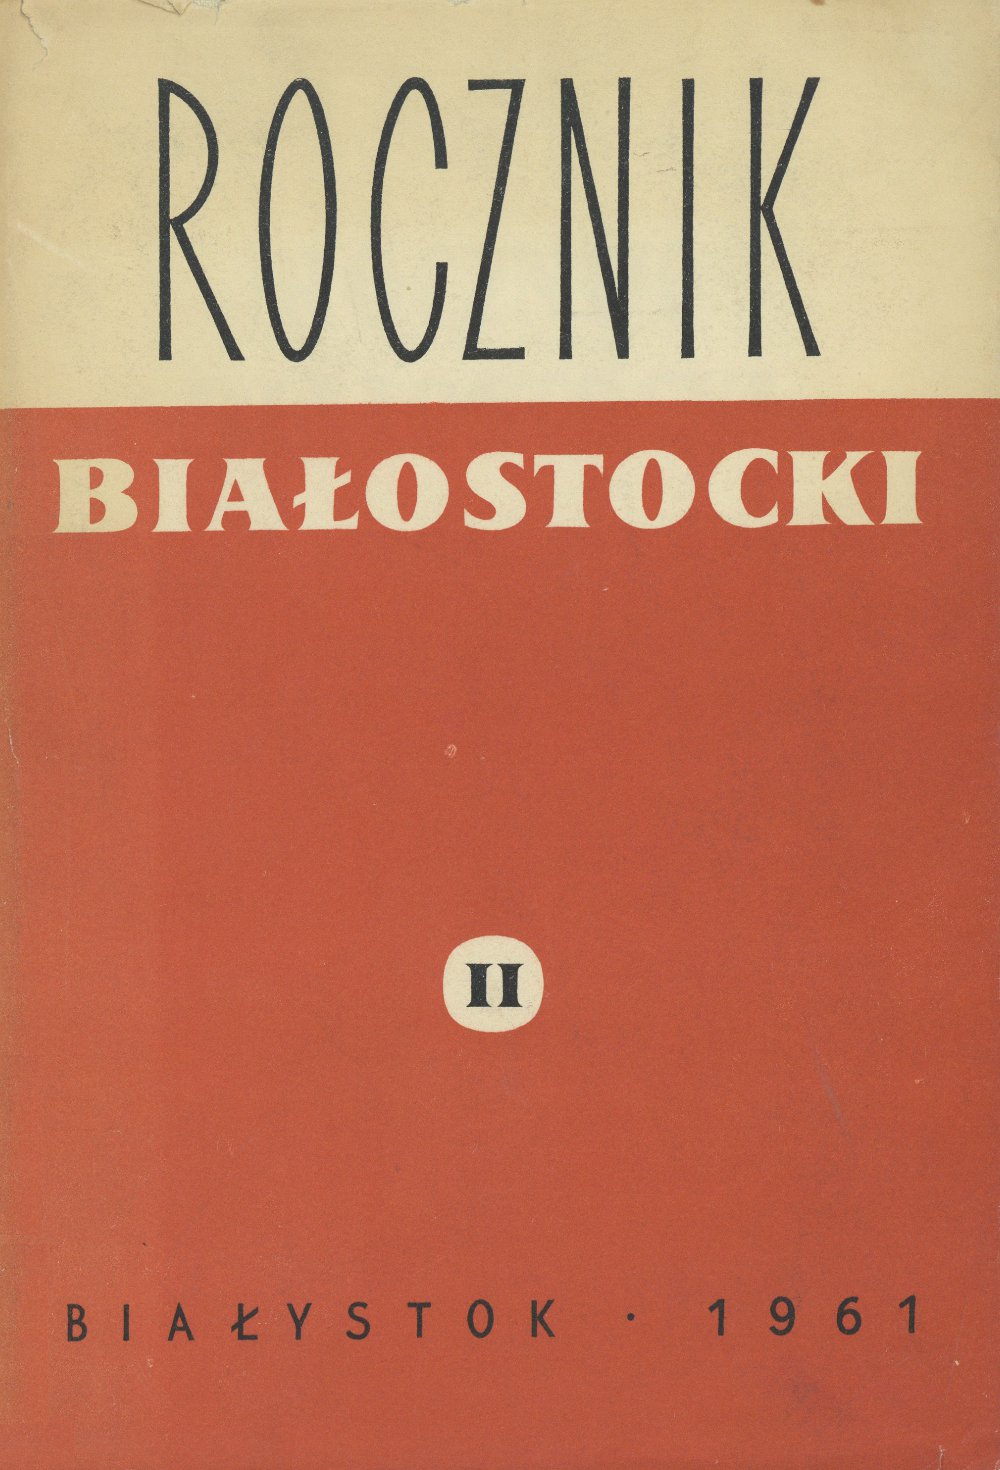 Rocznik Białostocki II